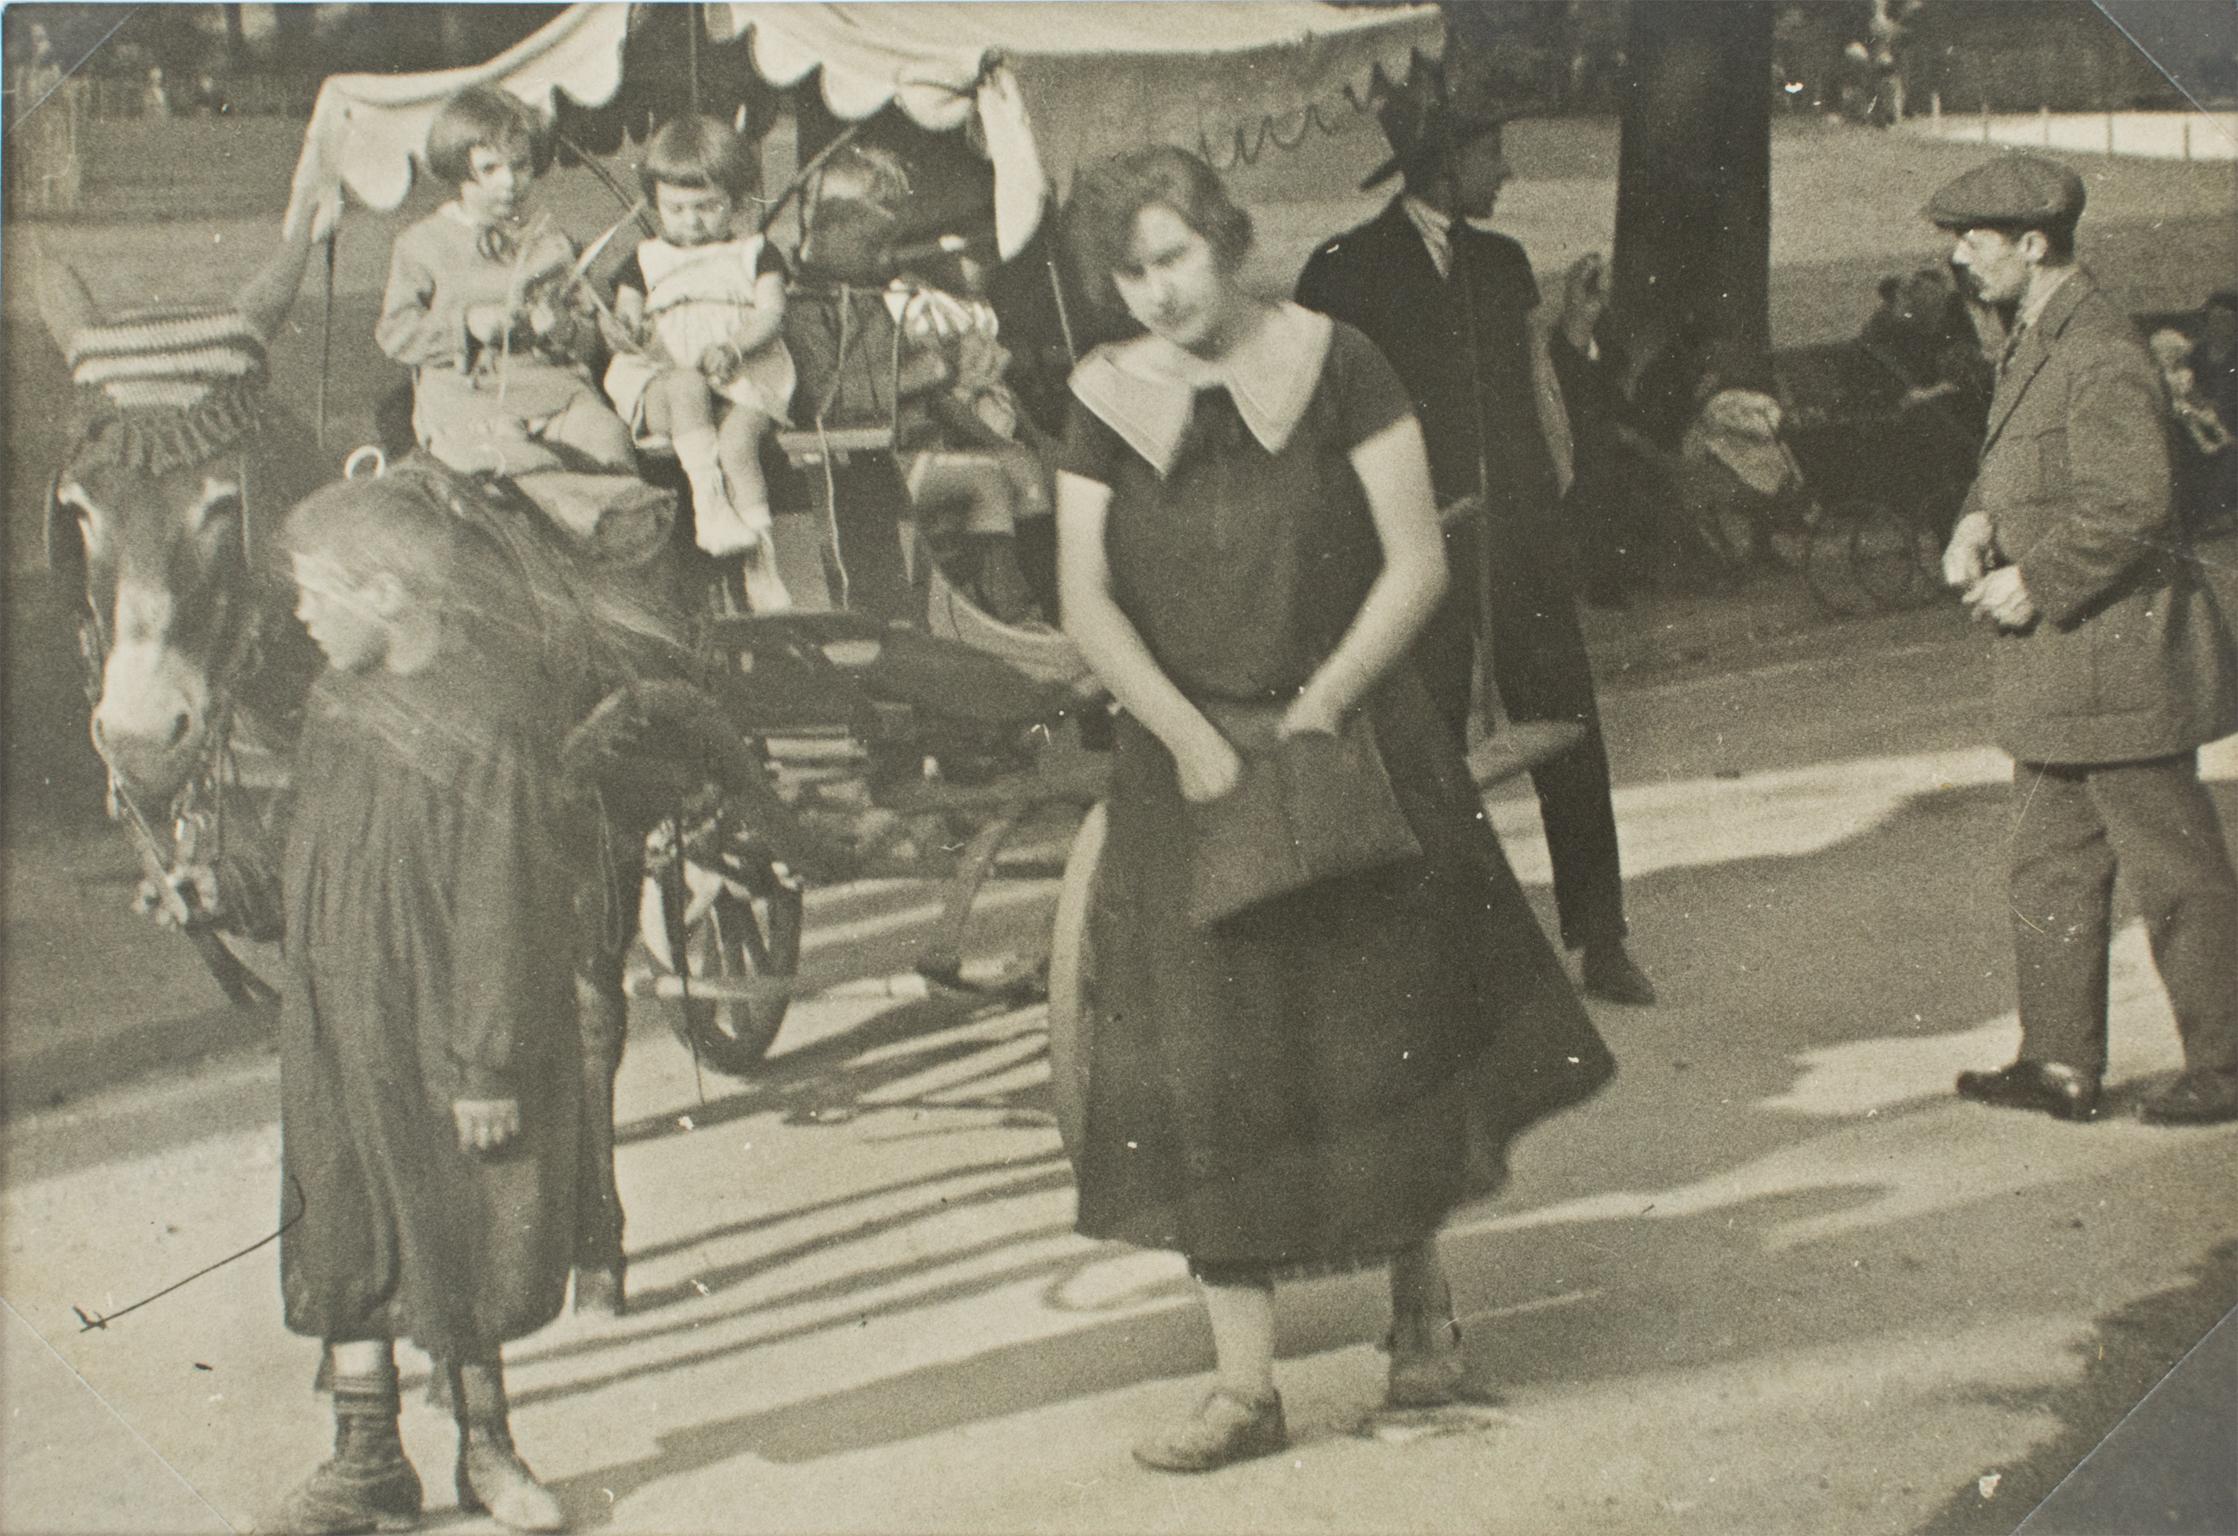 Kutschenfahrt in Pariser Garten, 1930, Silber-Gelatine-Schwarz-Weiß-Fotografie